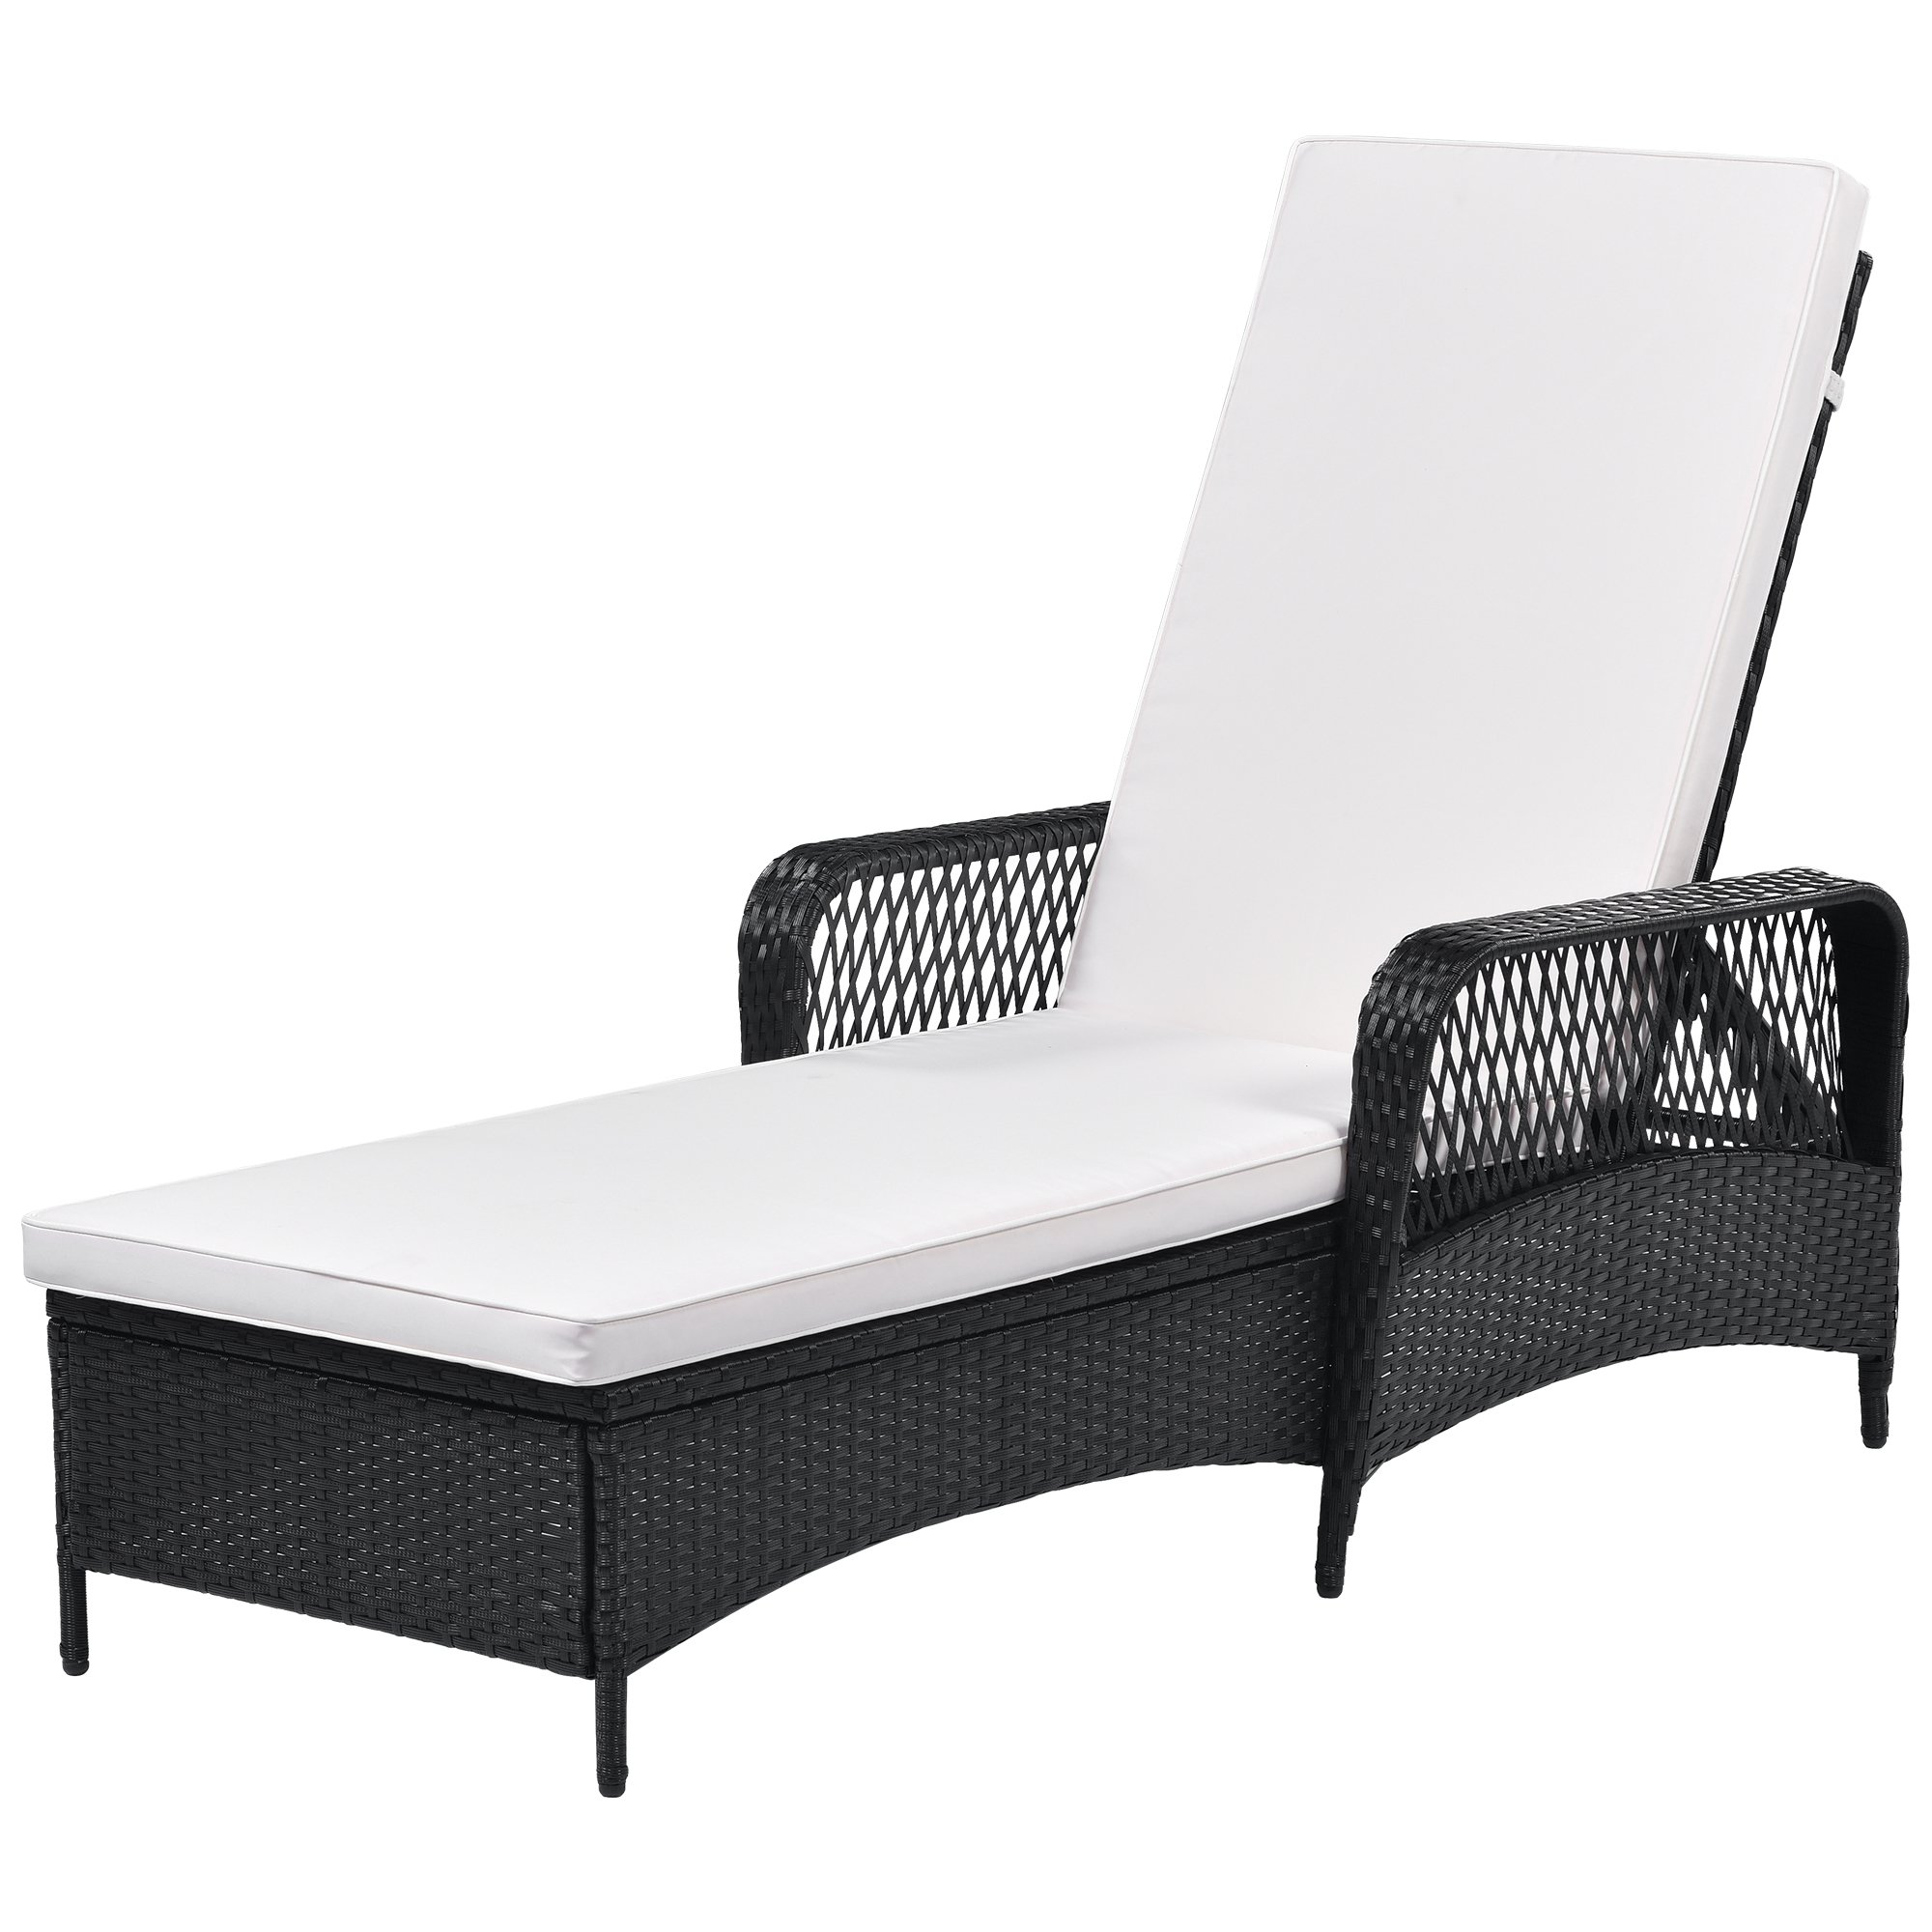 Outdoor patio pool PE rattan wicker chair wicker sun lounger, Adjustable backrest, beige cushion, Black wiker (1 set)-CASAINC